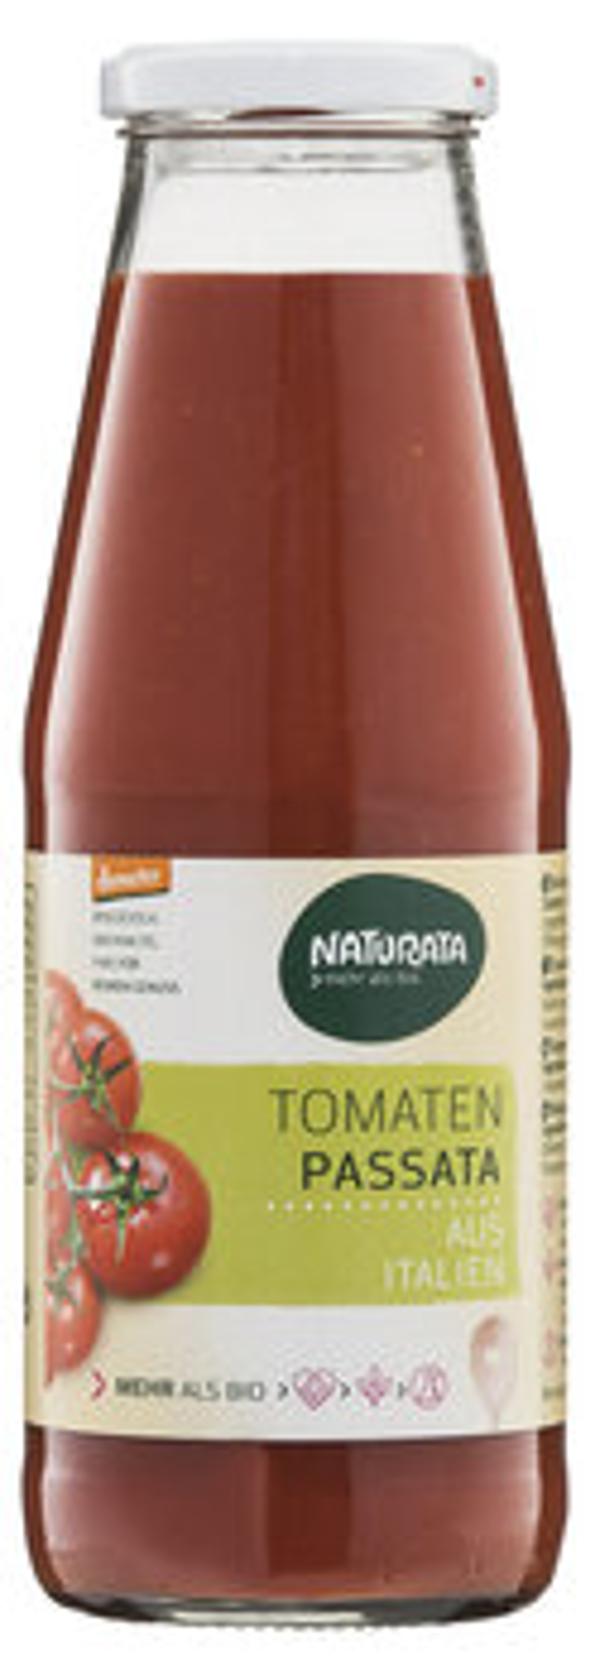 Produktfoto zu Tomaten Passata, 700 g